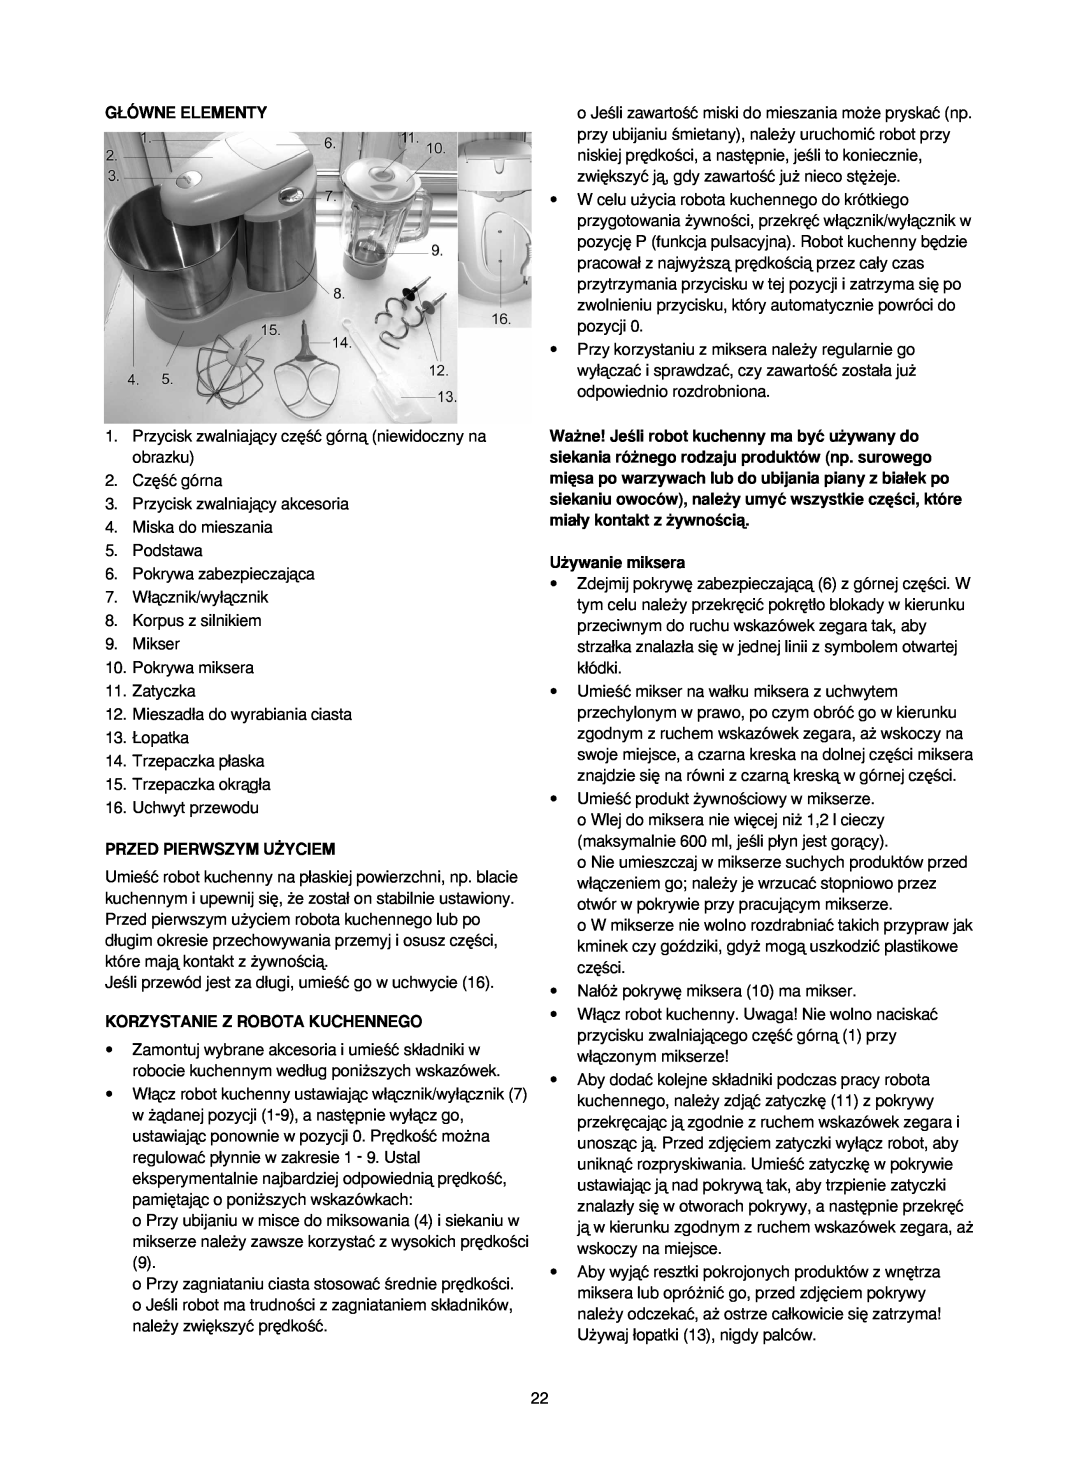 Melissa 246-016 manual G¸Ówne Elementy, Przed Pierwszym U˚Yciem, Korzystanie Z Robota Kuchennego, U˝ywanie miksera 